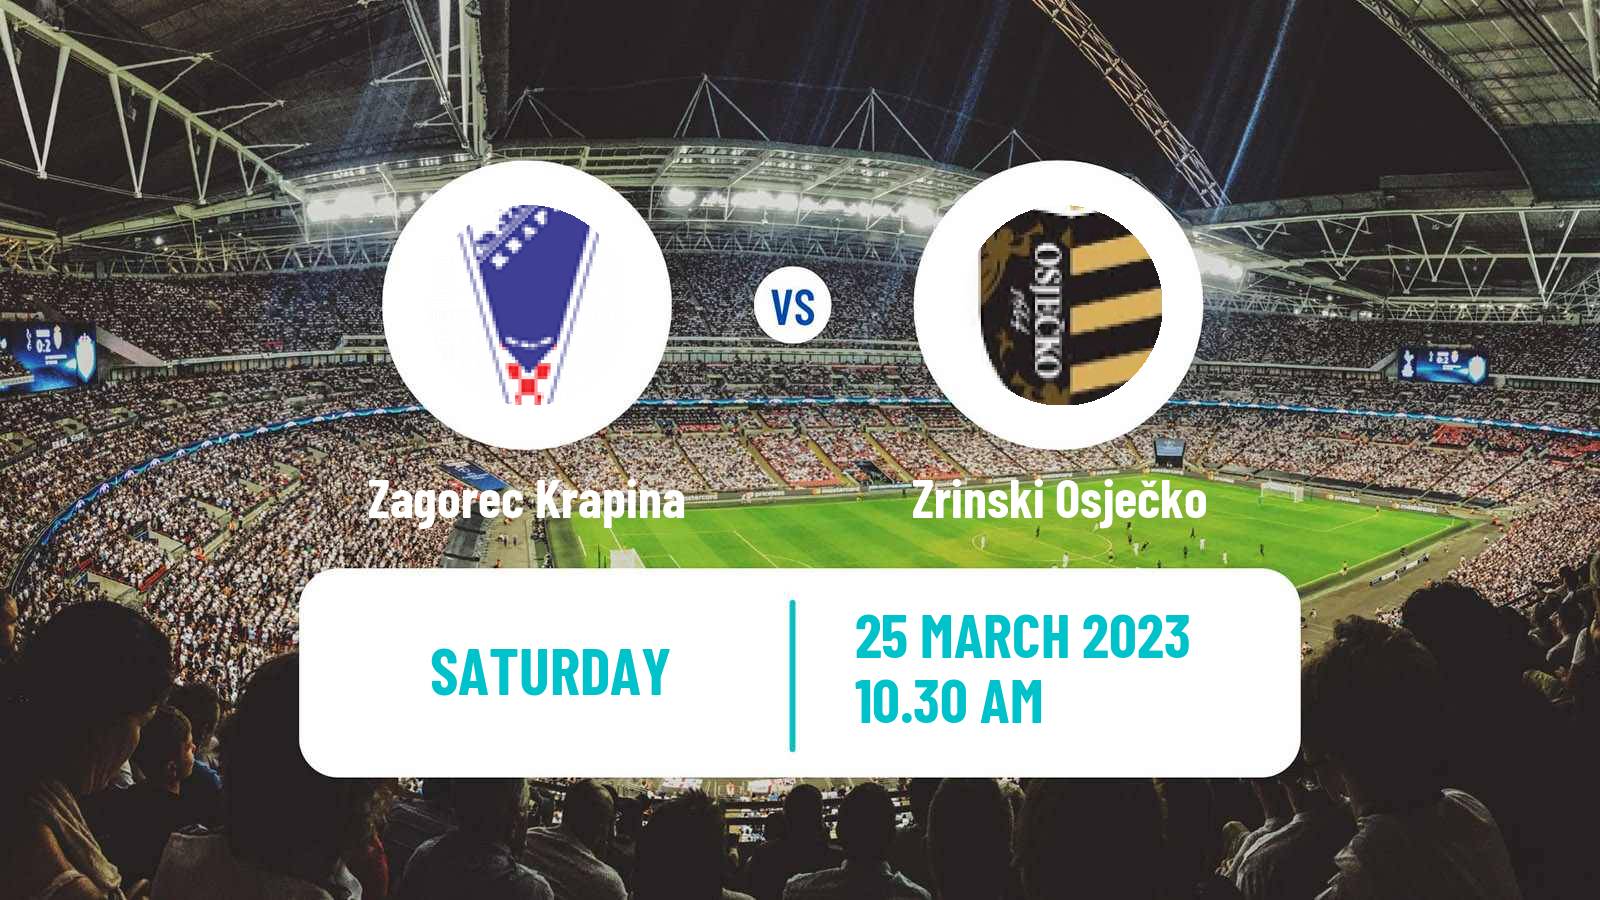 Soccer Croatian Druga NL Zagorec Krapina - Zrinski Osječko